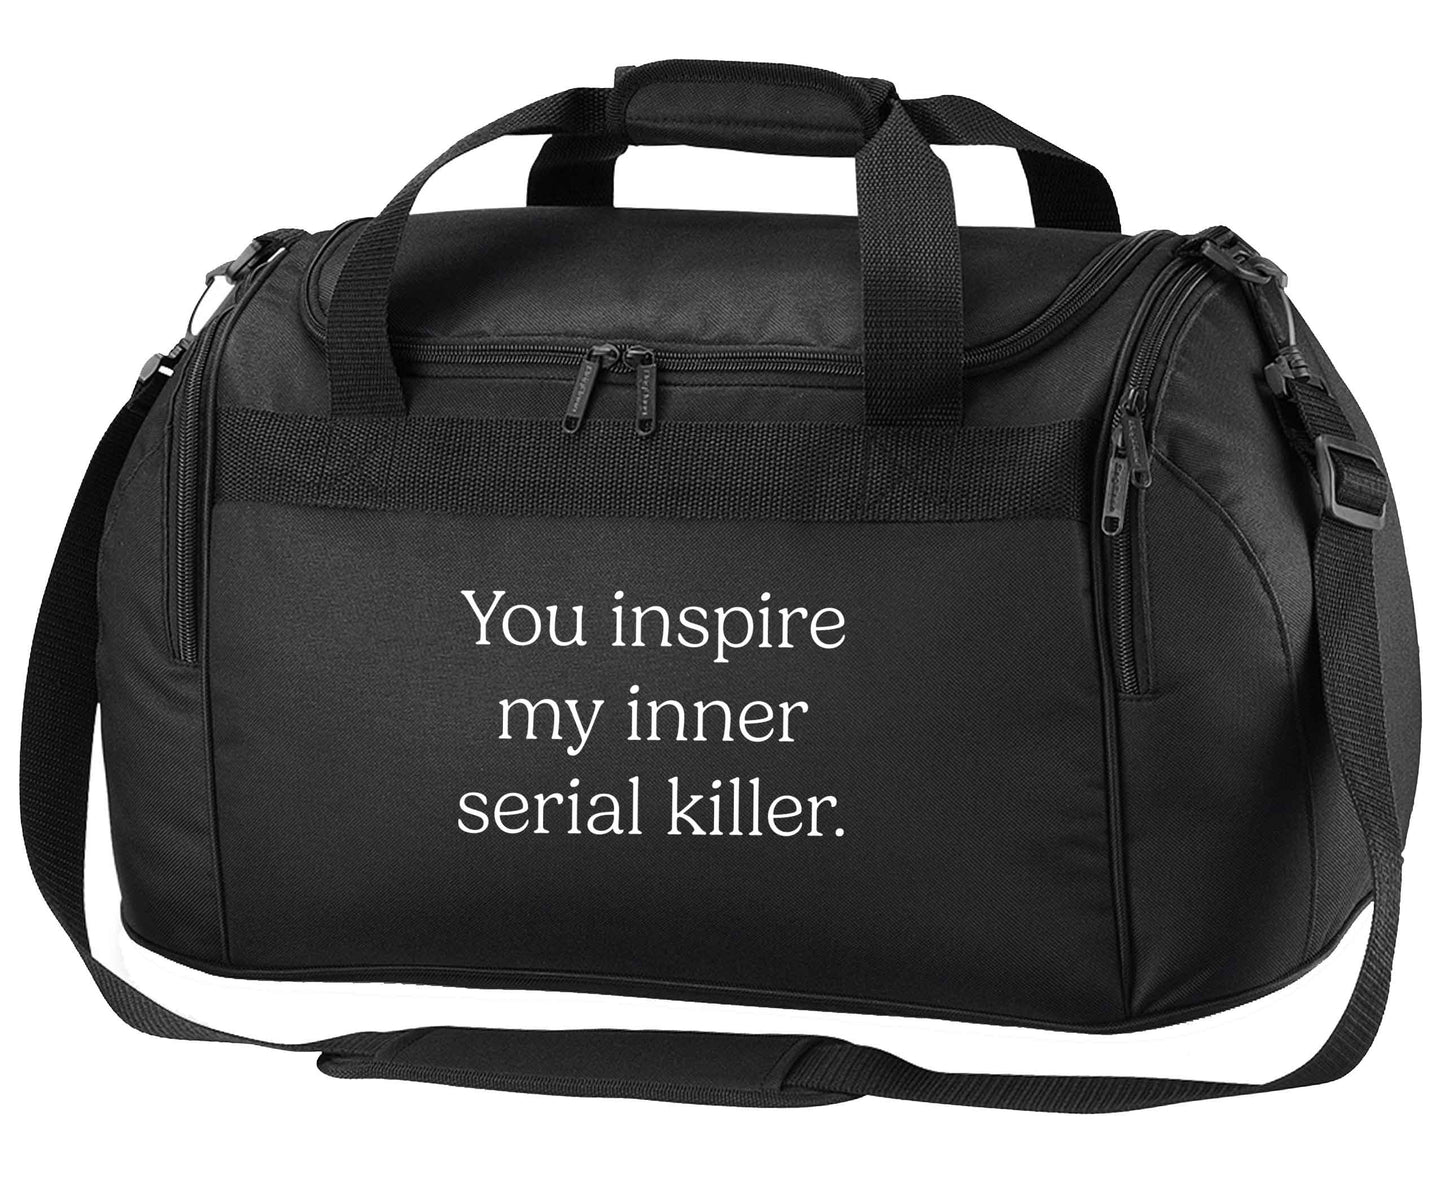 You inspire my inner serial killer Kit black holdall / duffel bag